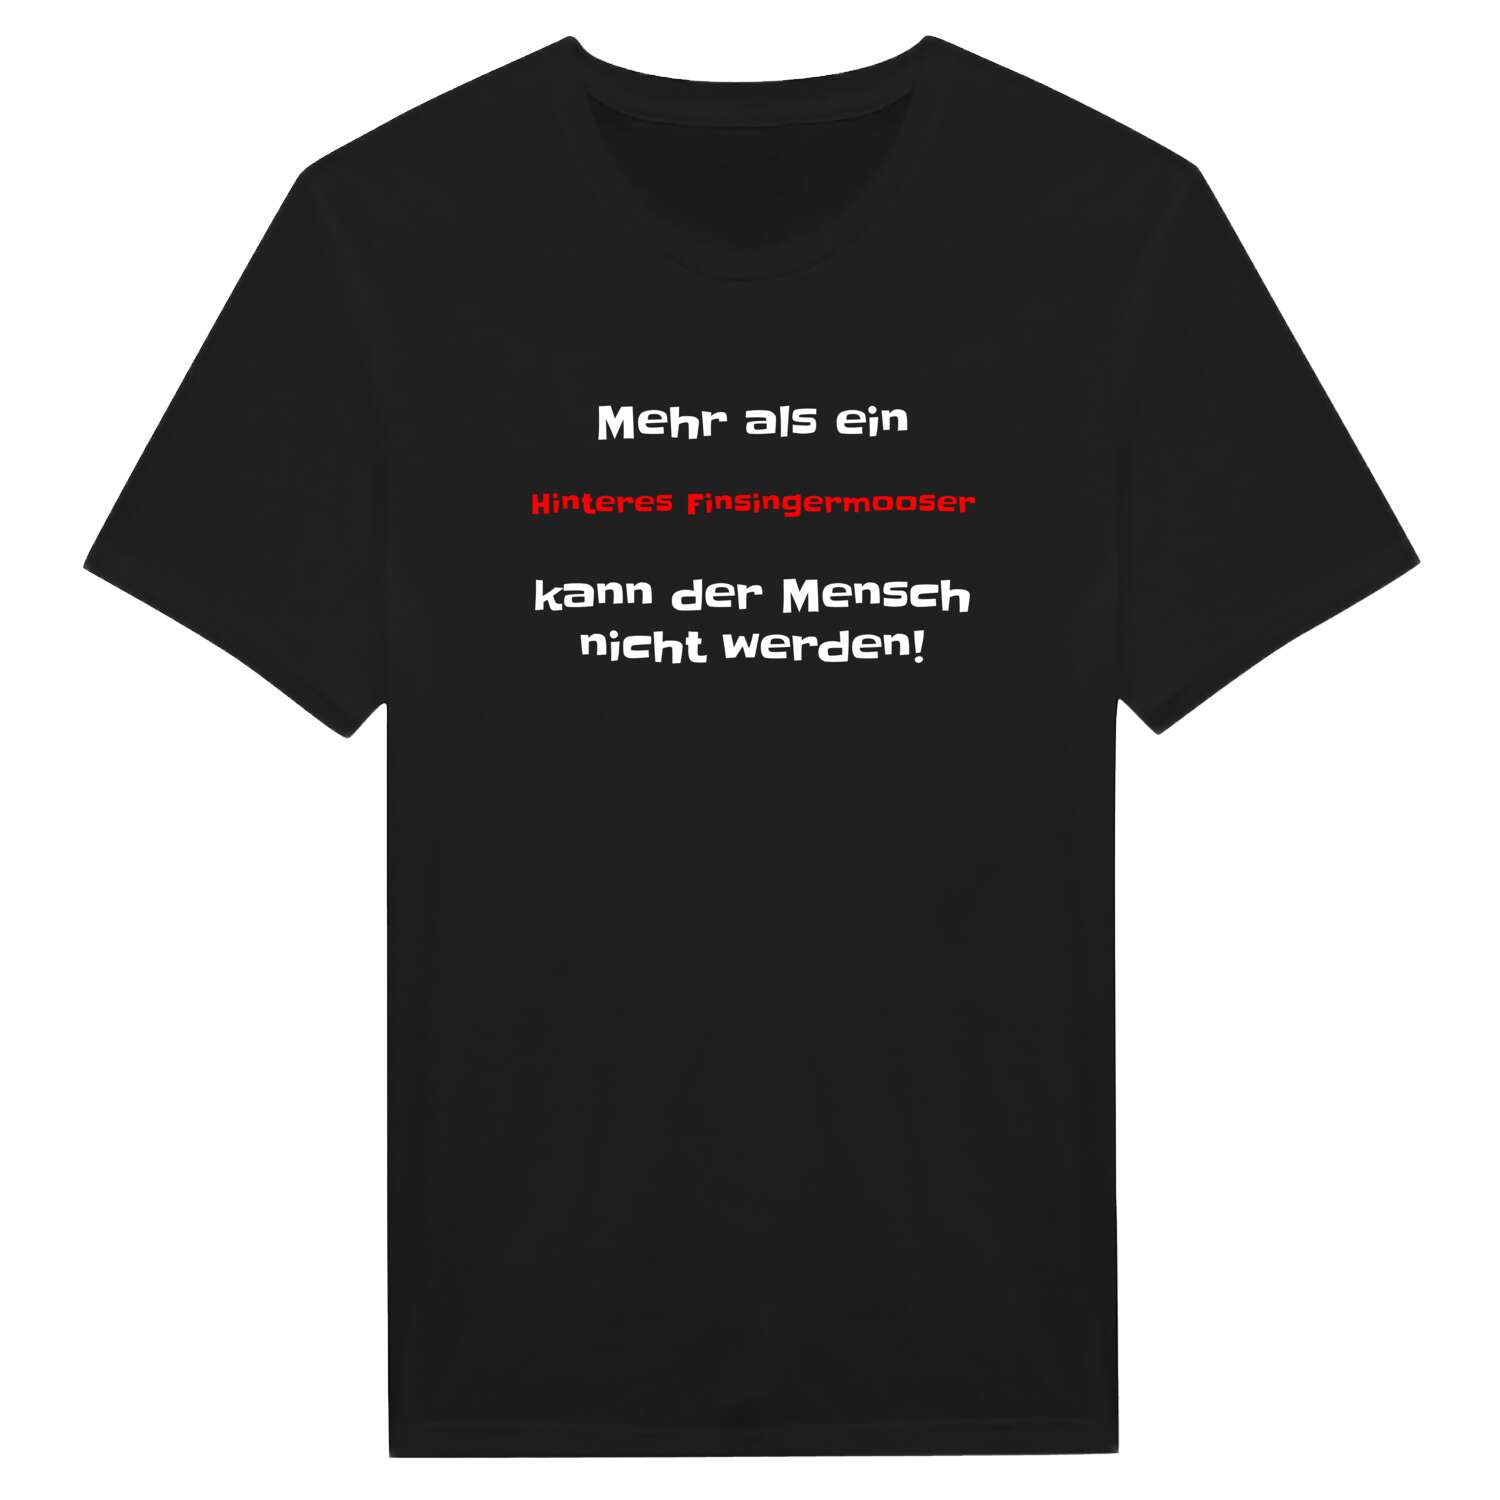 Hinteres Finsingermoos T-Shirt »Mehr als ein«